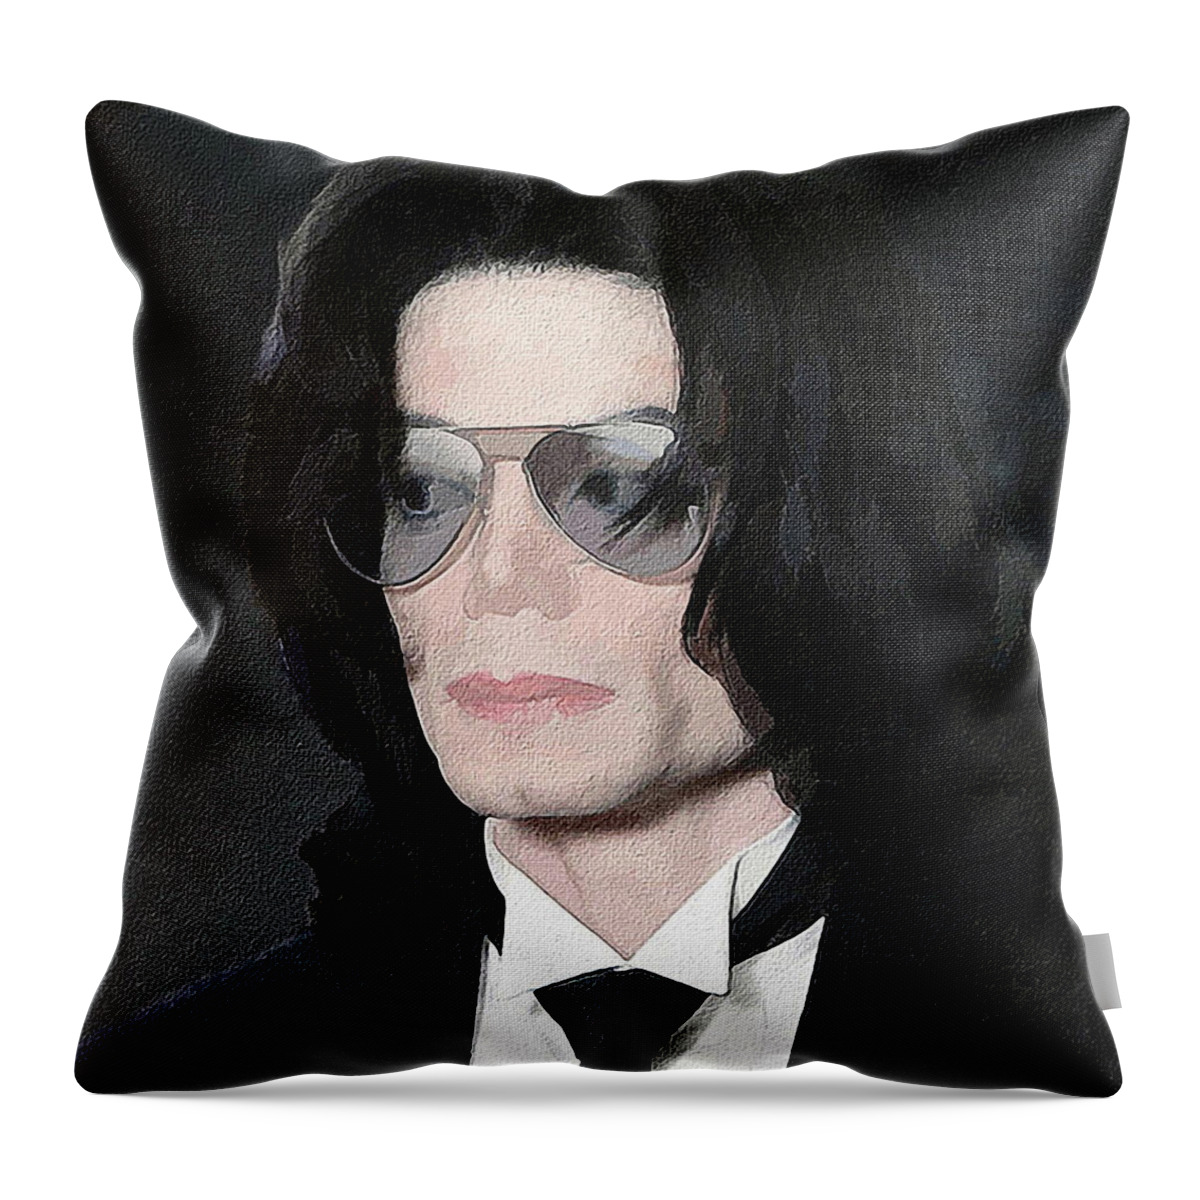 Michael Jackson Throw Pillow featuring the digital art Michael Jackson #1 by Jerzy Czyz